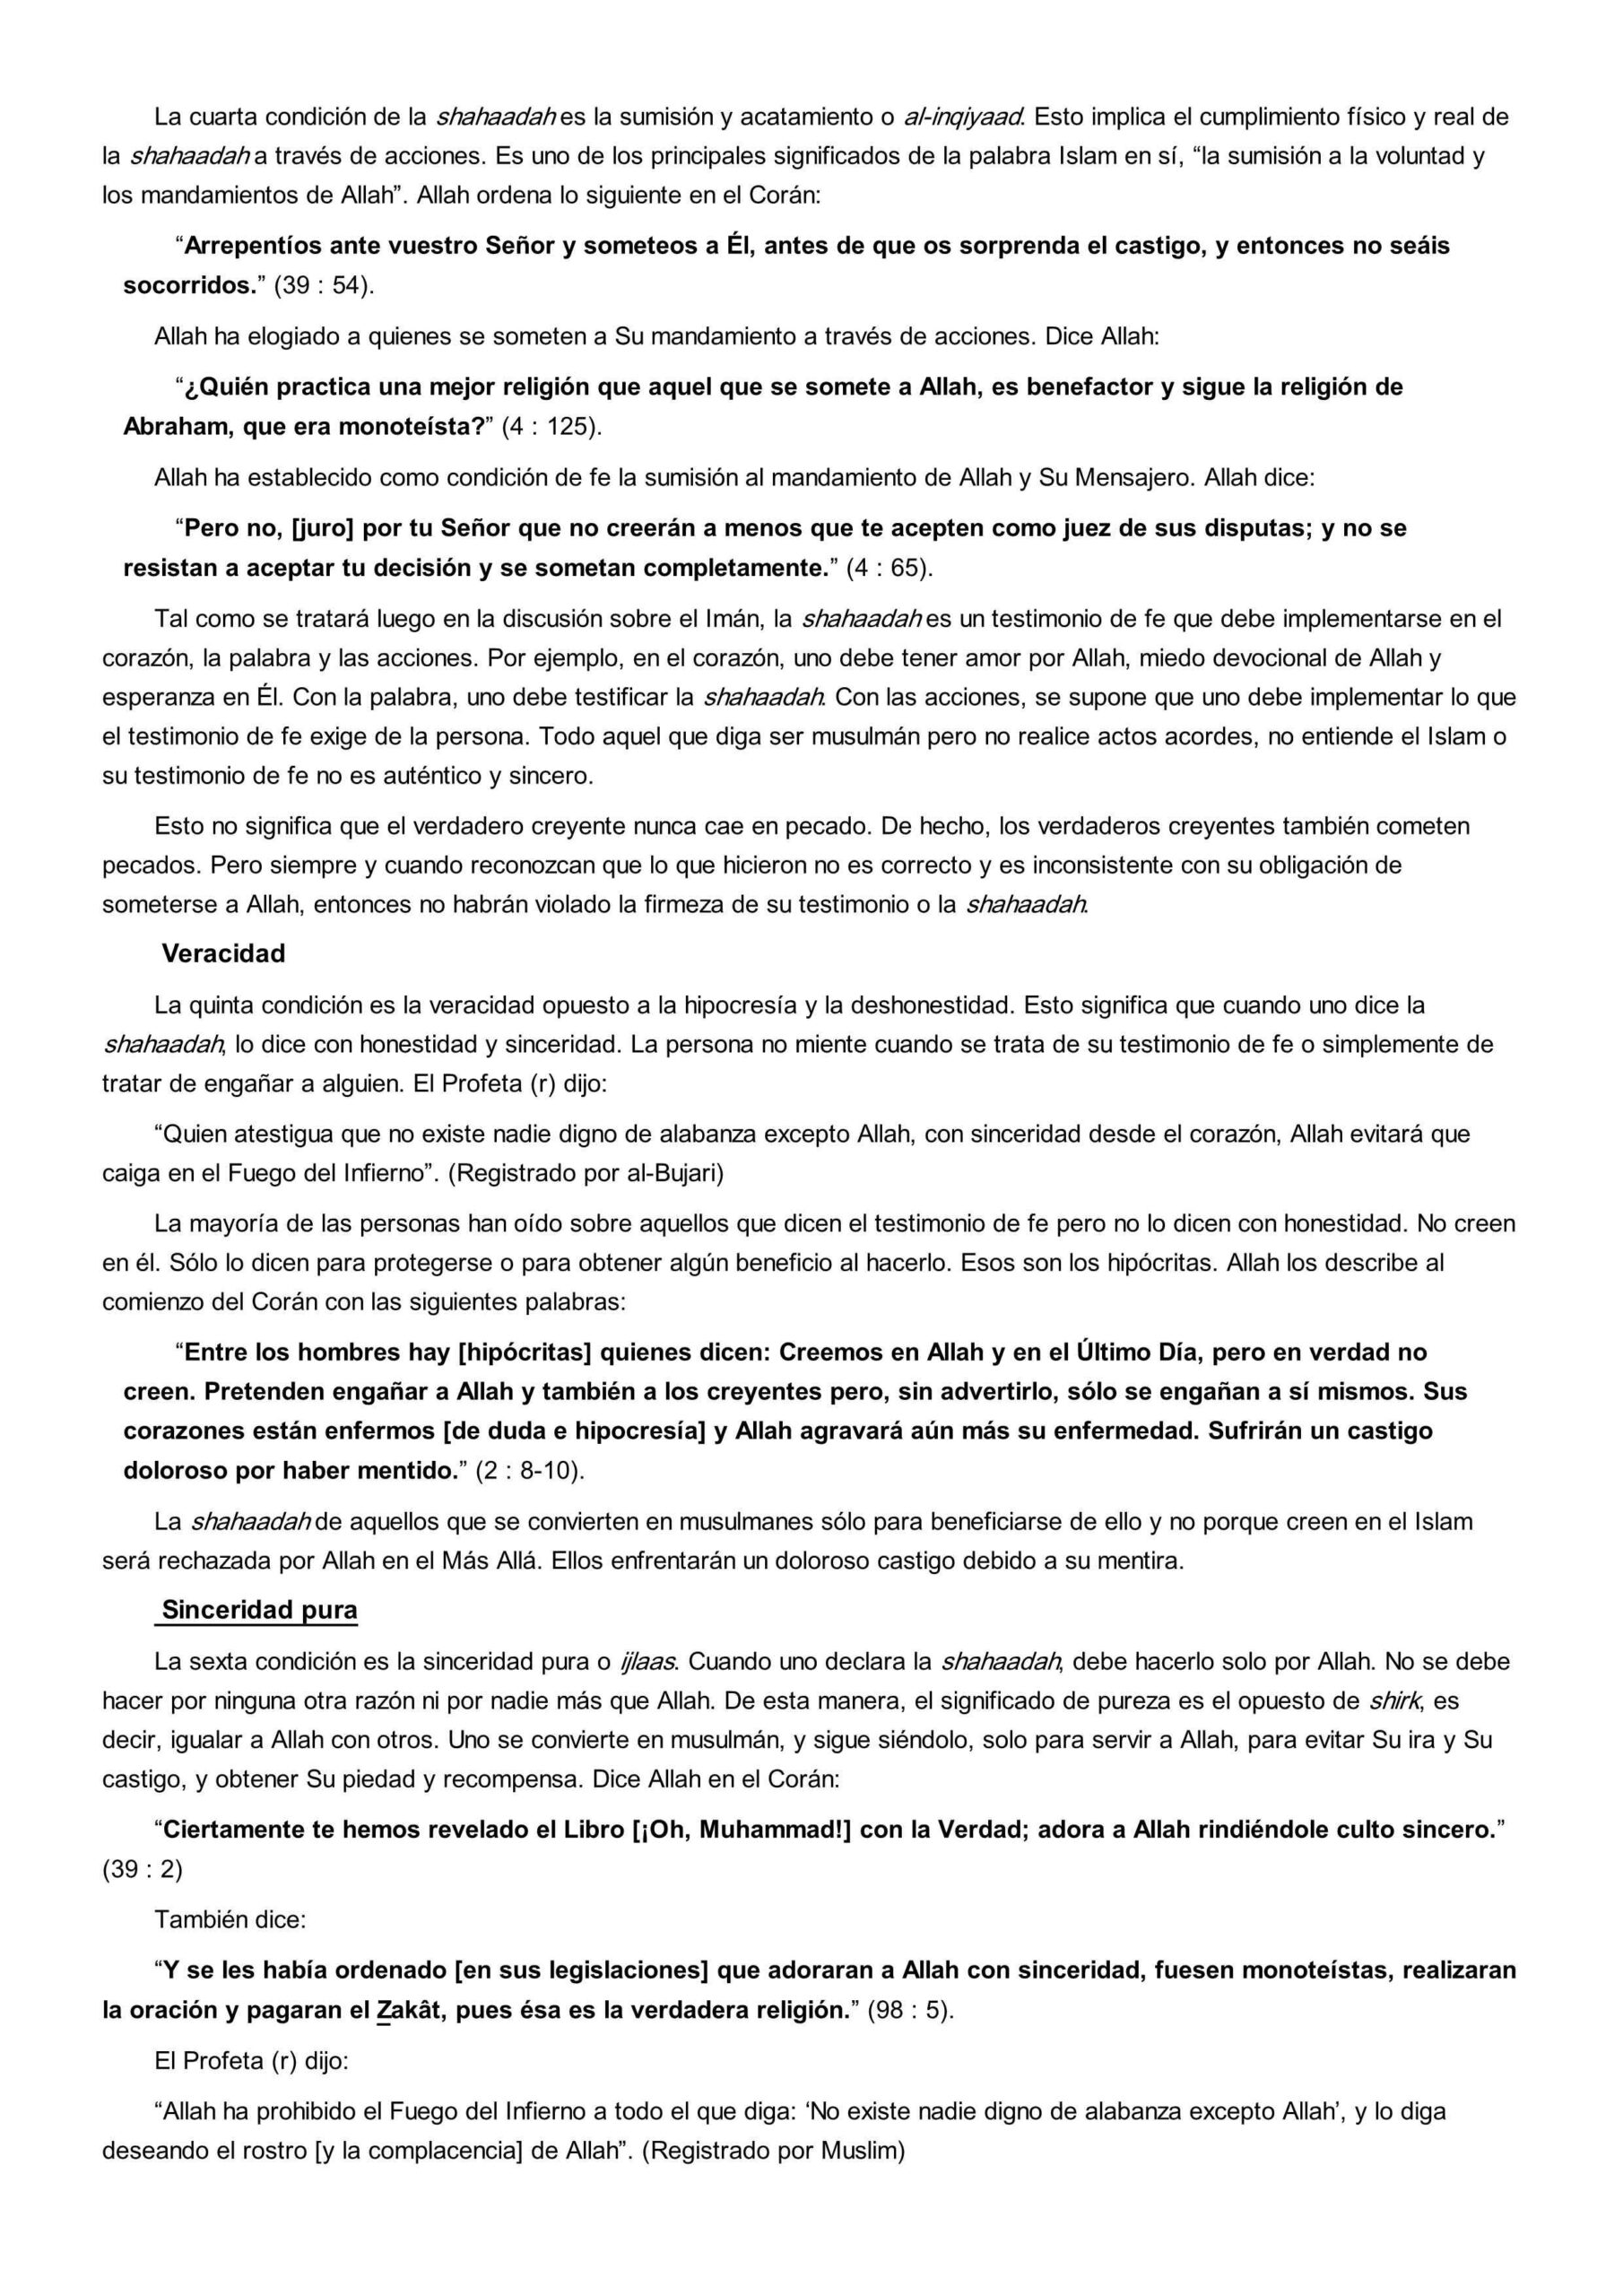 إسباني  شروط لا إله إلا الله  Las condiciones del testimonio de Fe.pdf, 5-Sayfa 